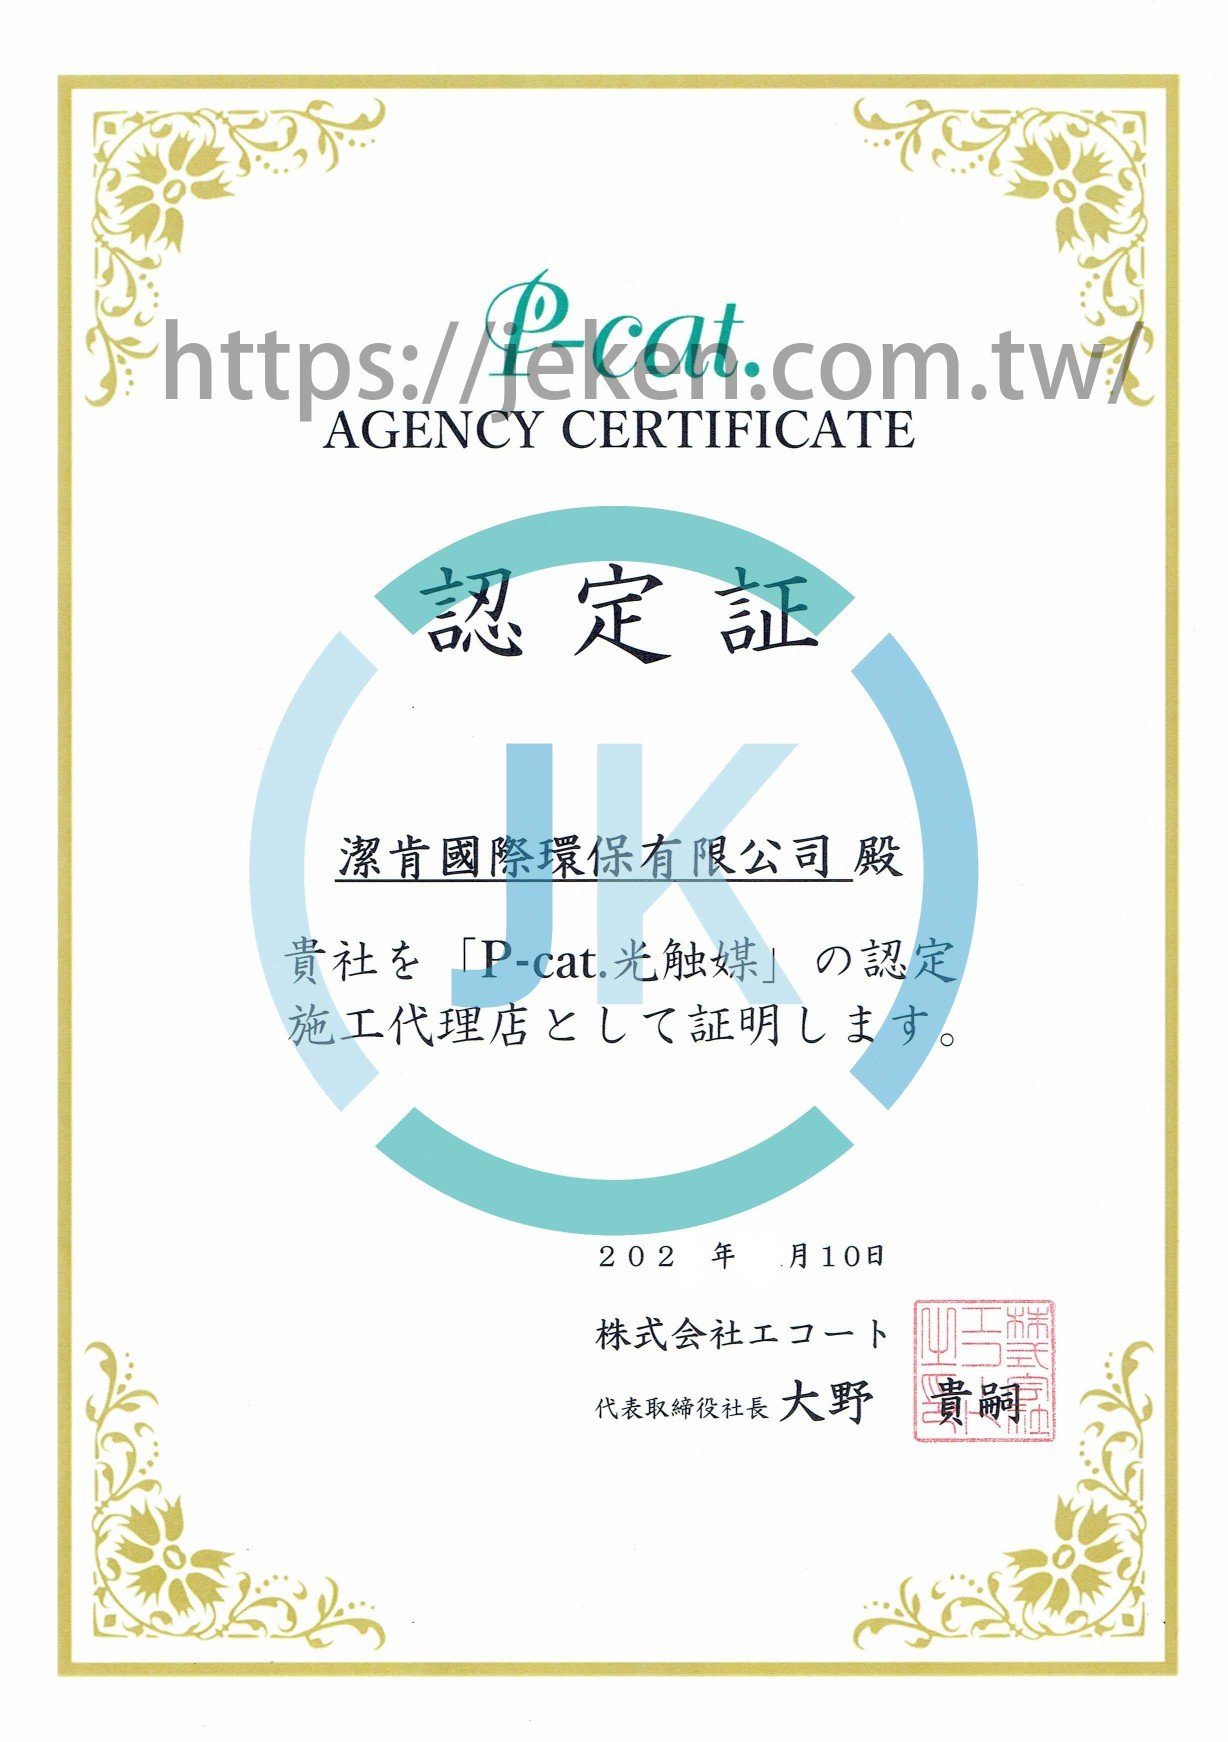 潔肯國際環保有限公司，代理日本P-cat光觸媒代理證書